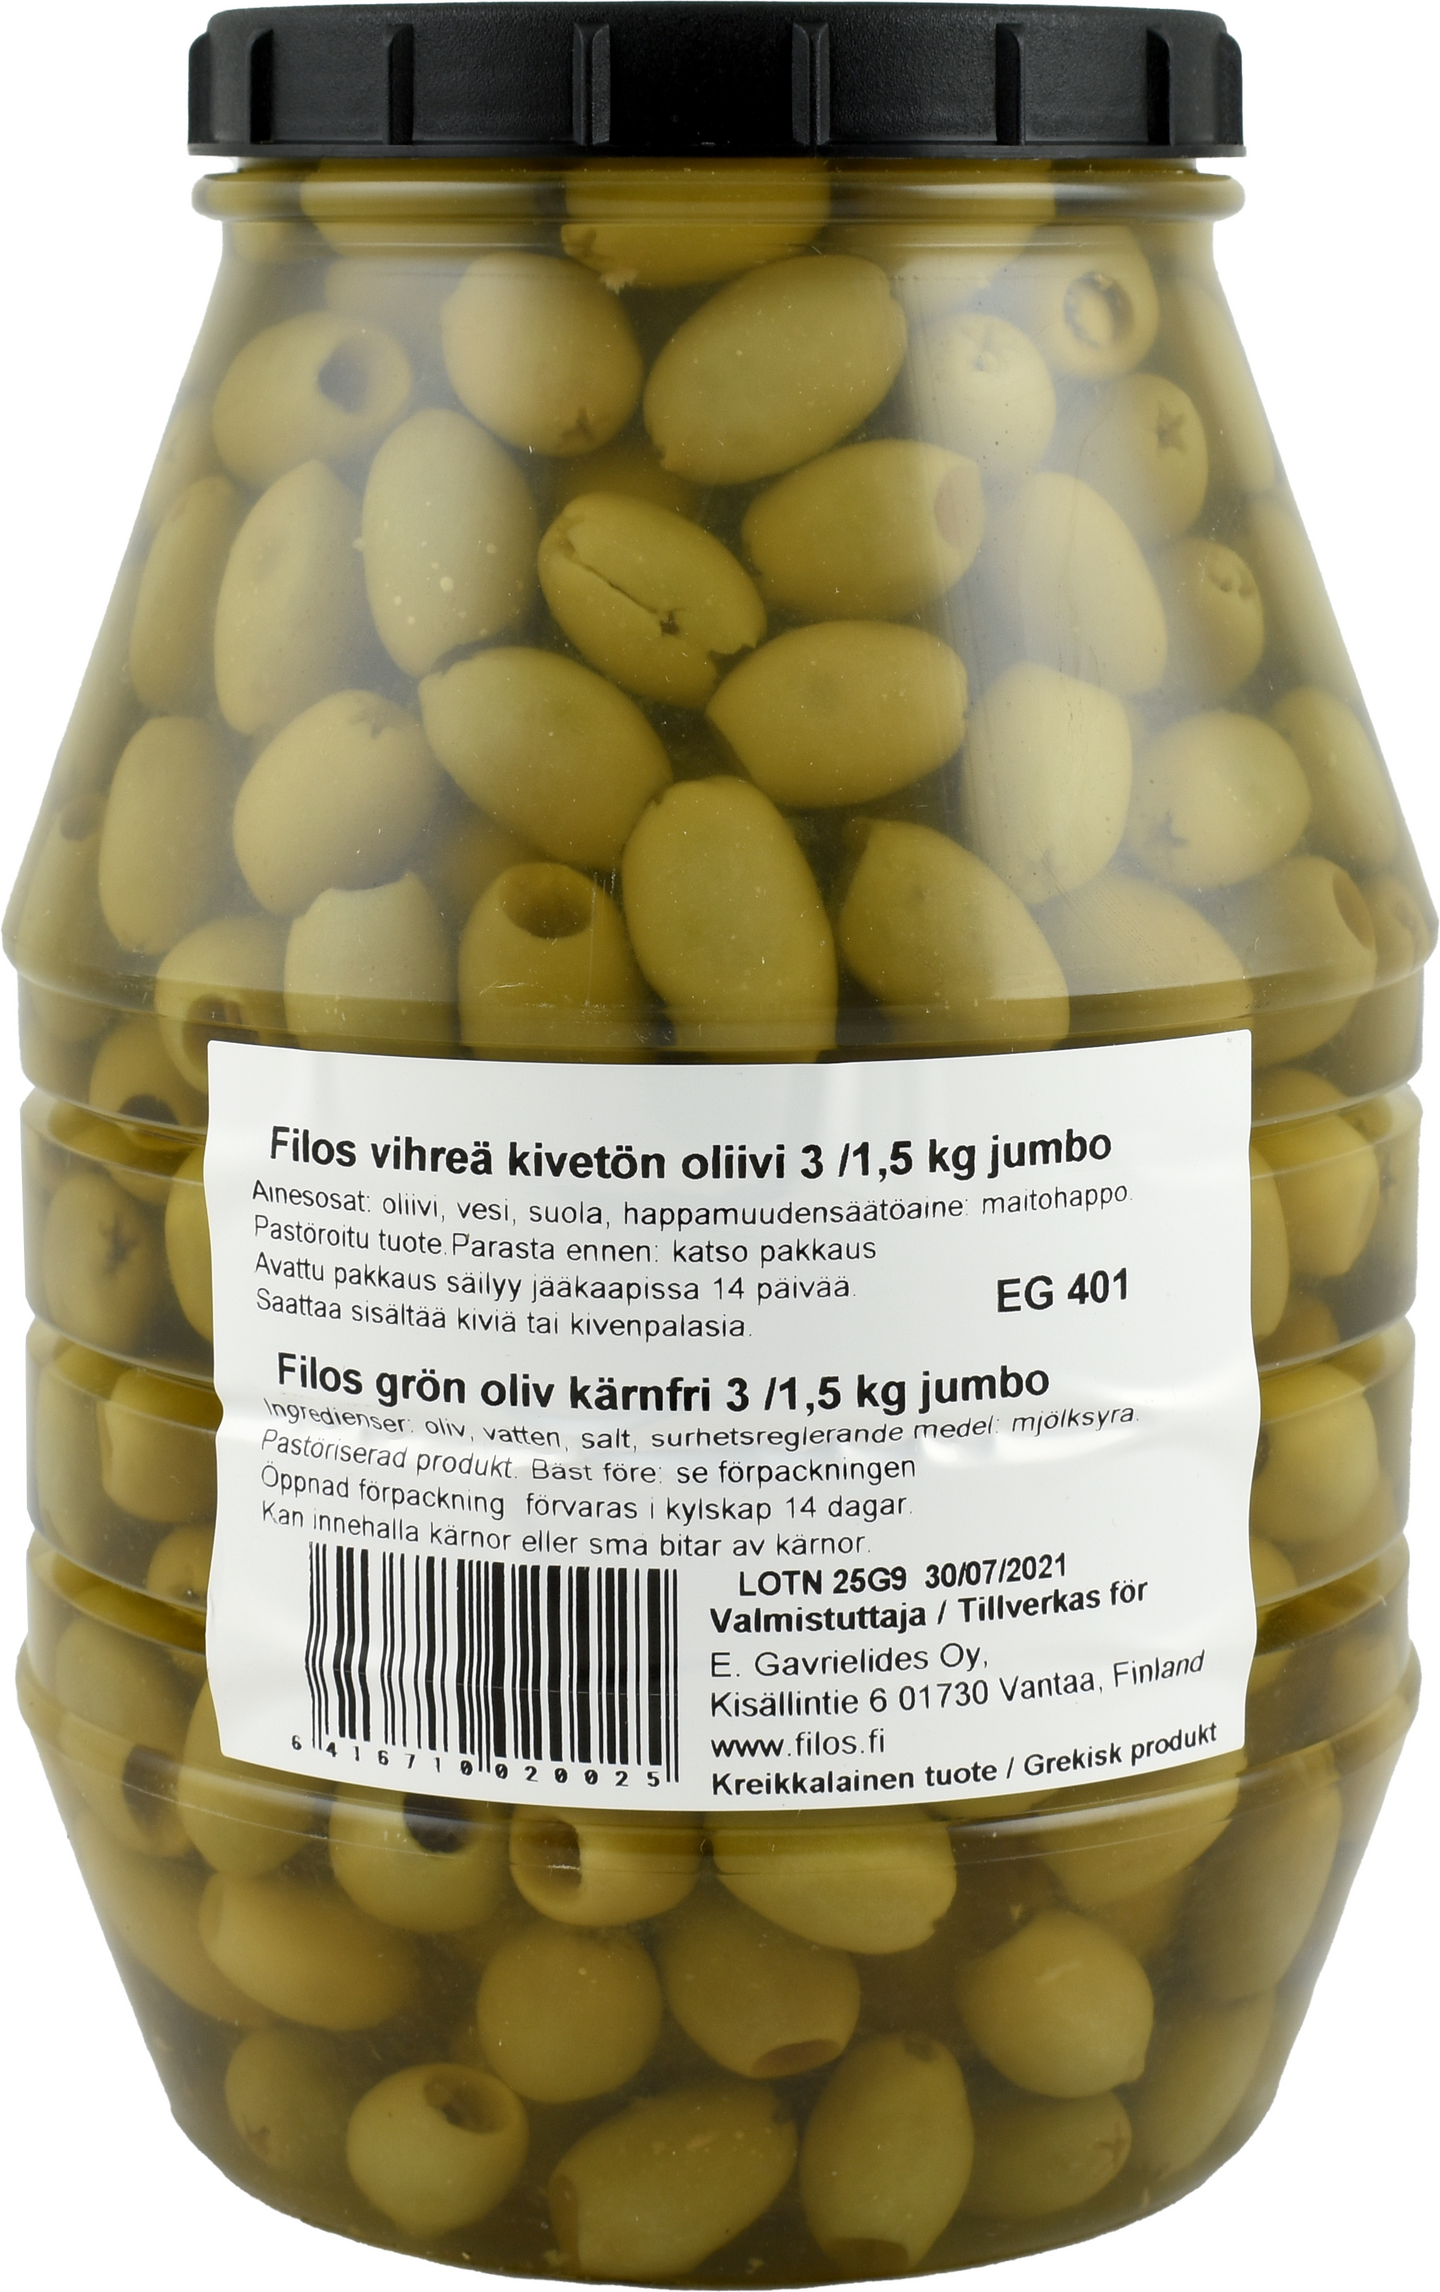 Filos jumbo kivetön vihreä oliivi 3/1,5 kg